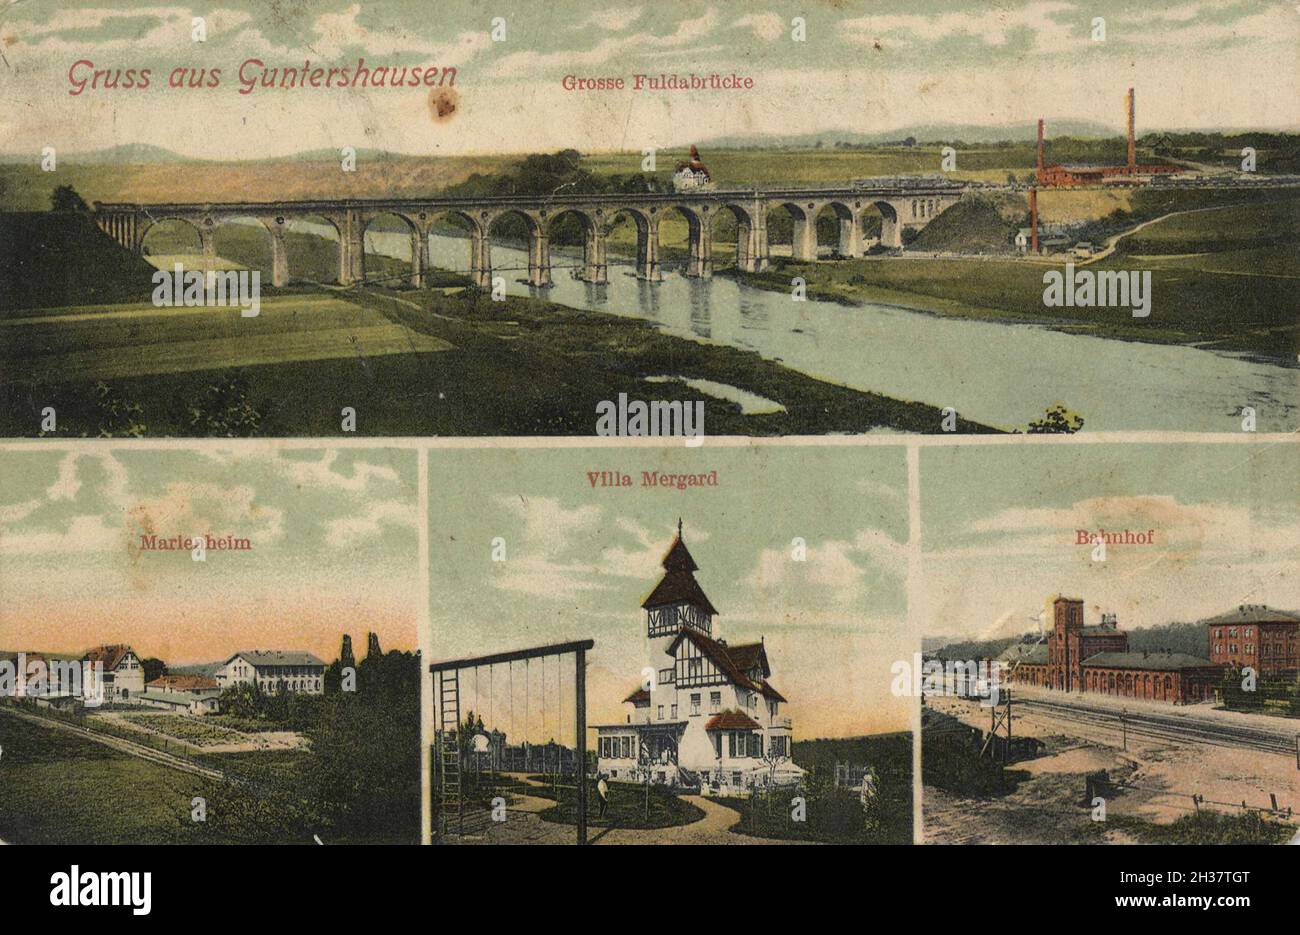 Guntershausen, Baunatal im nordhessischen Landkreis Kassel, Hessen, Deutschland, Ansicht von CA 1910, digitale Reproduktion einer gemeinfreien Postkarte Banque D'Images